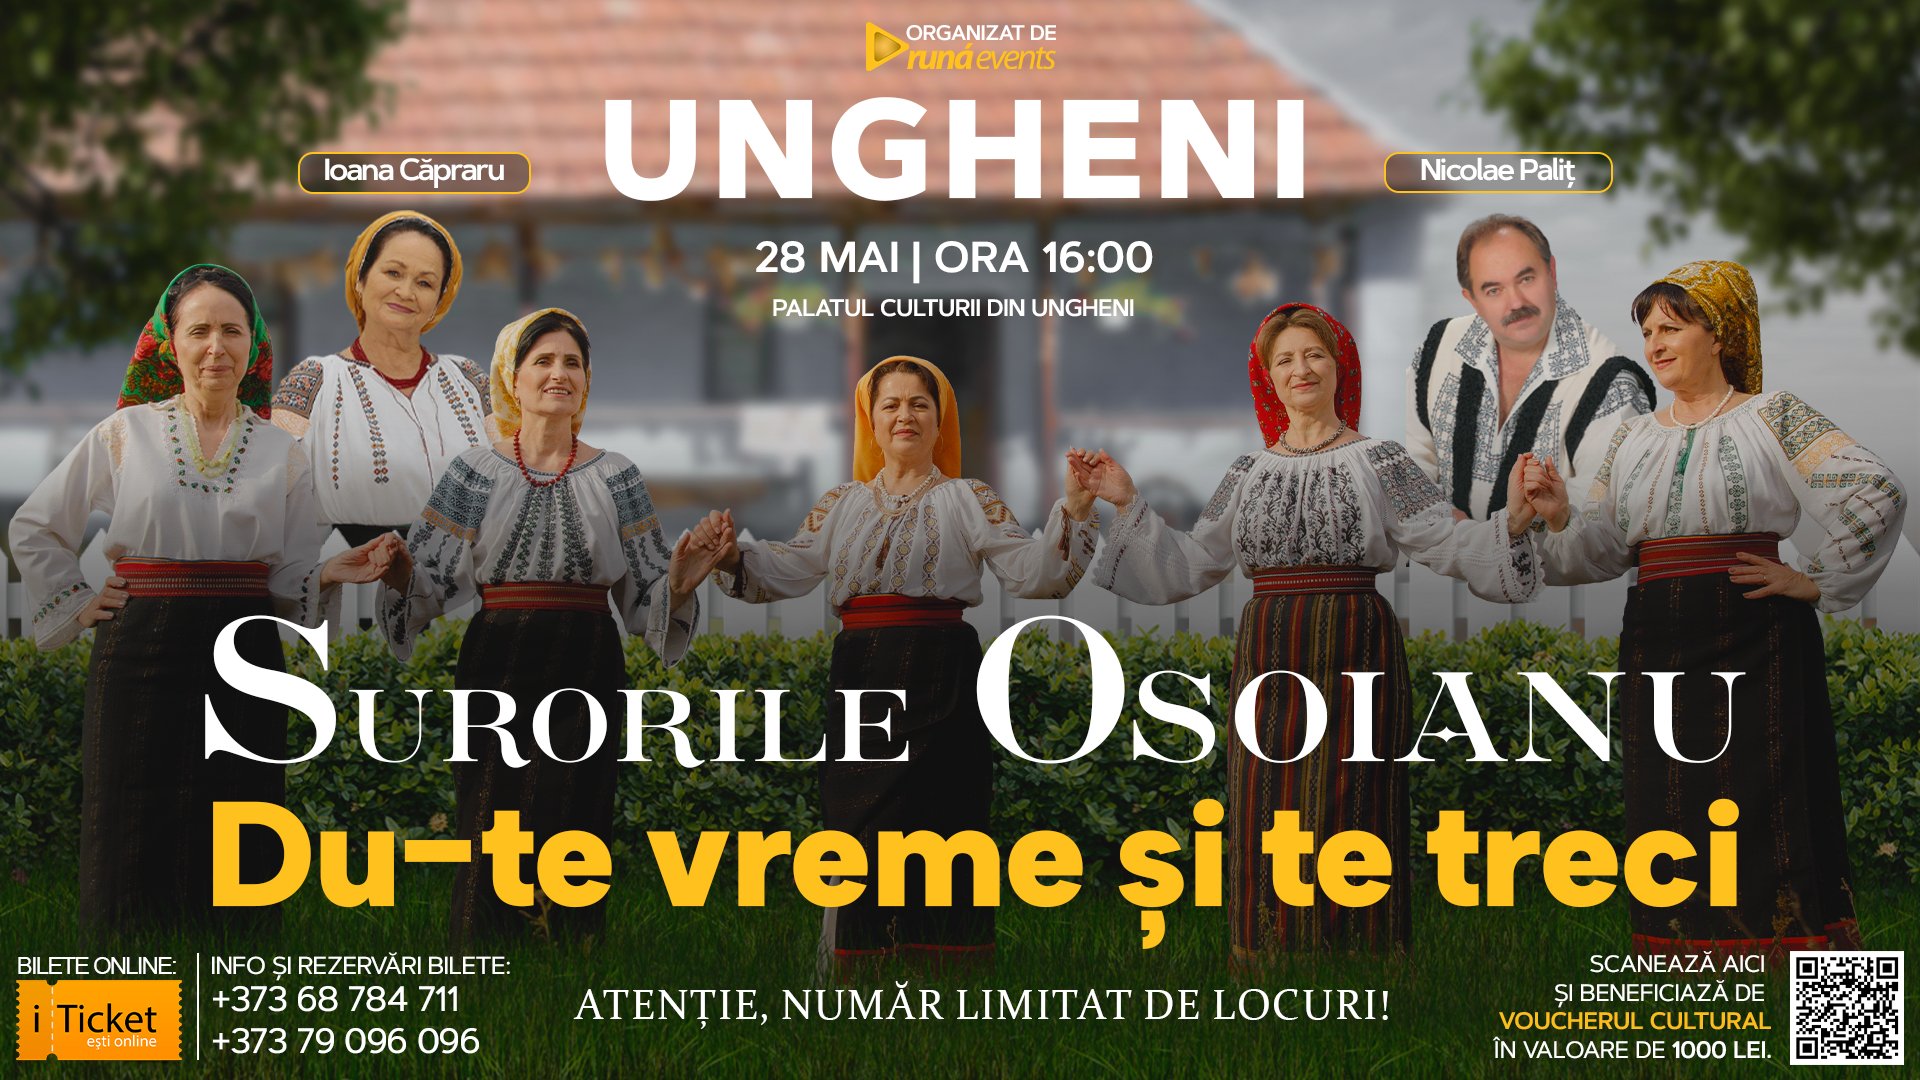 Concert in Ungheni - Surorile Osoianu, Ioana Capraru și Nicolae Palit - “DU-TE VREME ȘI TE TRECI”